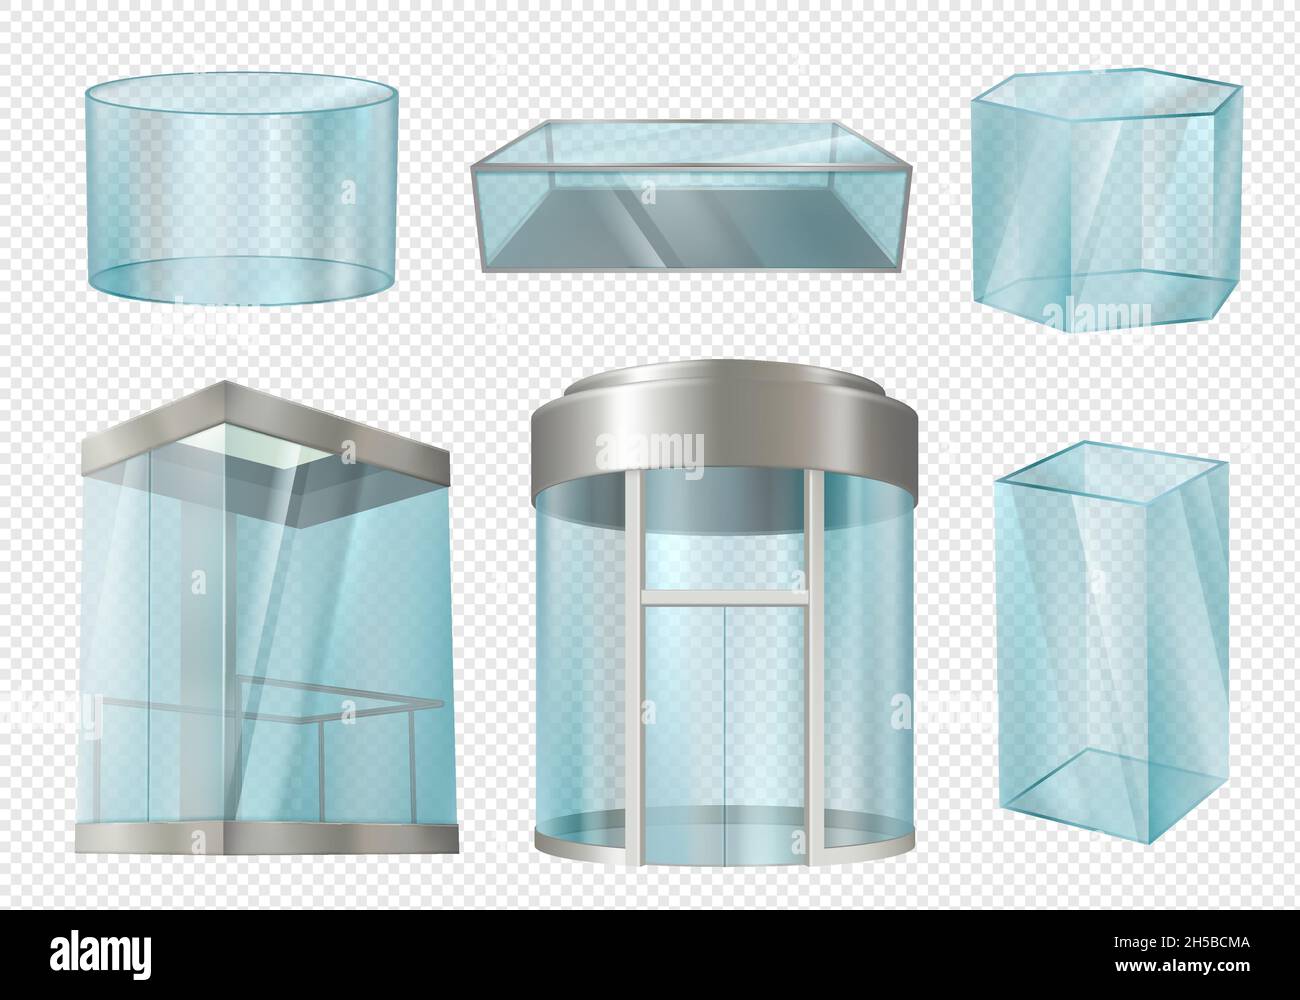 Cilindri in vetro. Vetrine trasparenti stand in varie forme cilindro cubo bianco elevatore in centro commerciale. Modelli realistici vettoriali decenti Illustrazione Vettoriale